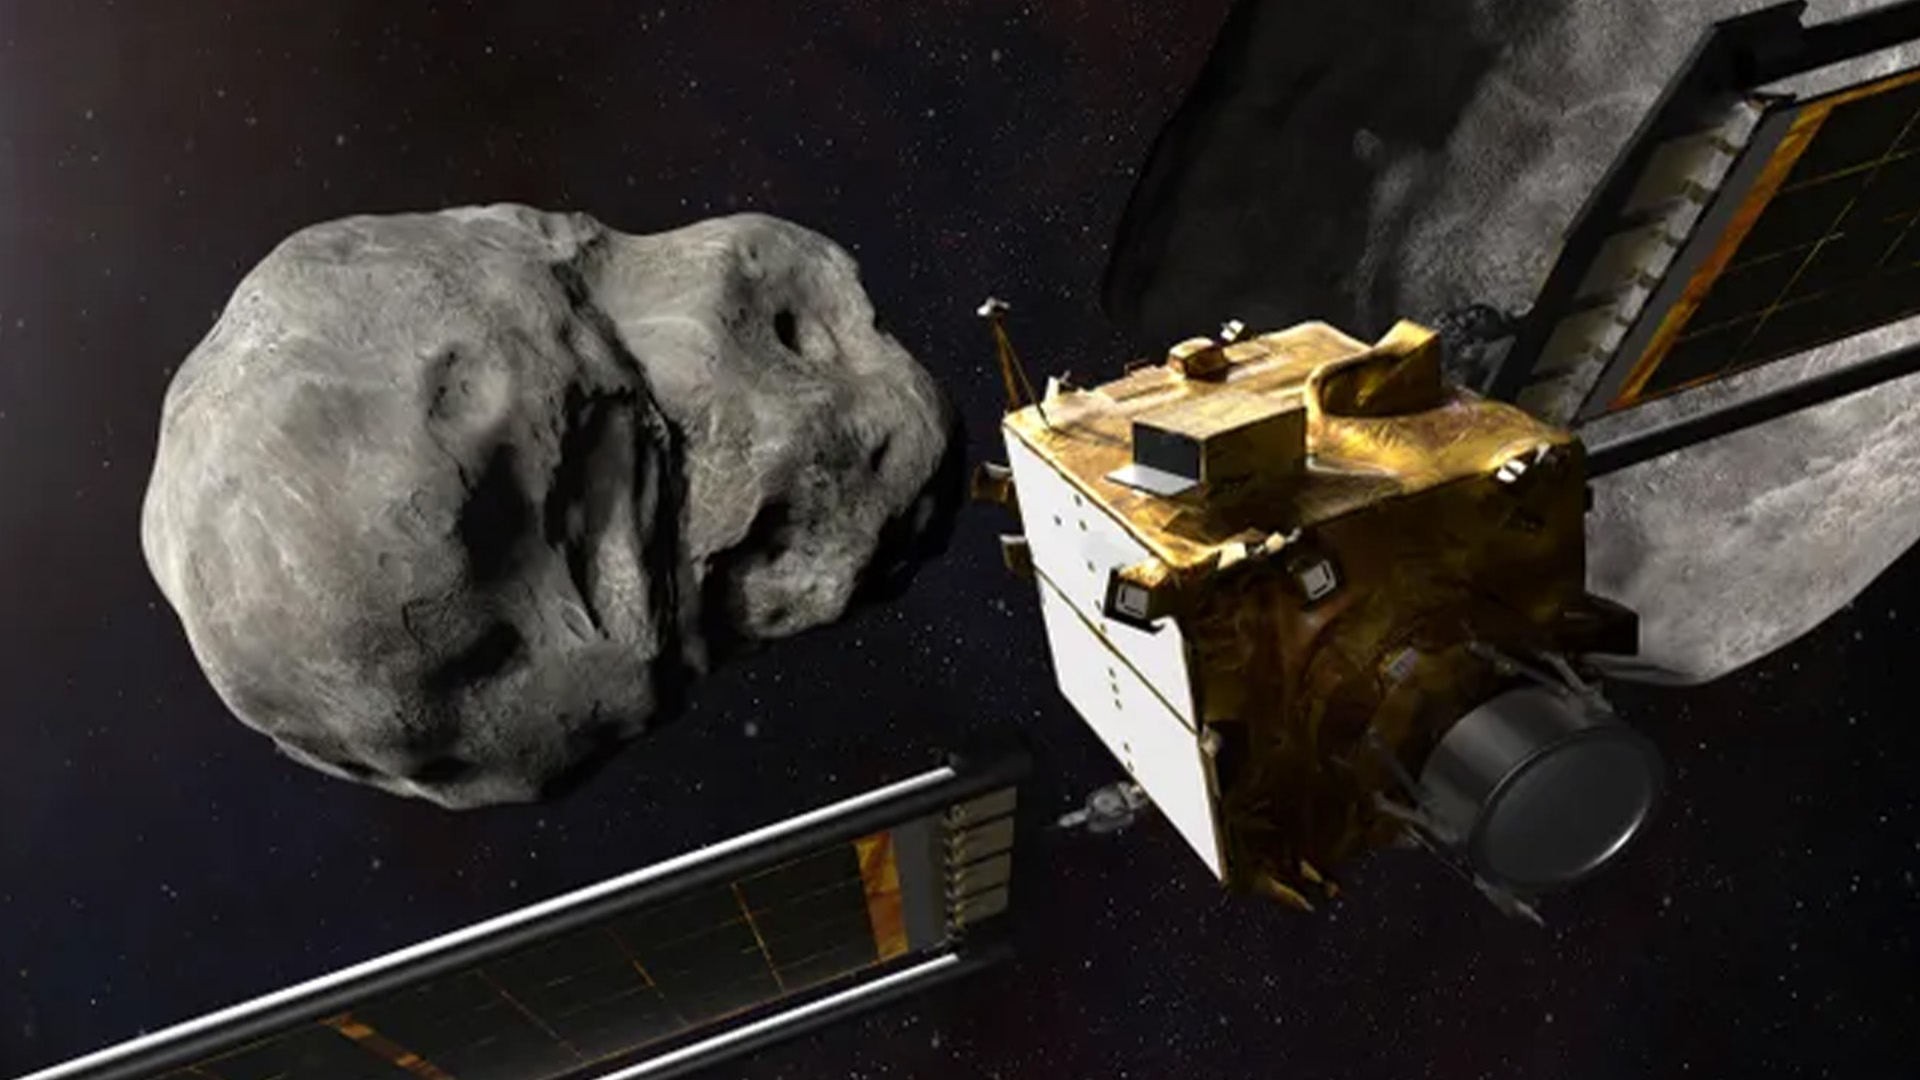 Иллюстрация эксперимента NASA по перенаправлению двойного астероида (DART) во время его приближения к целевому спутнику вокруг астероида Дидим.